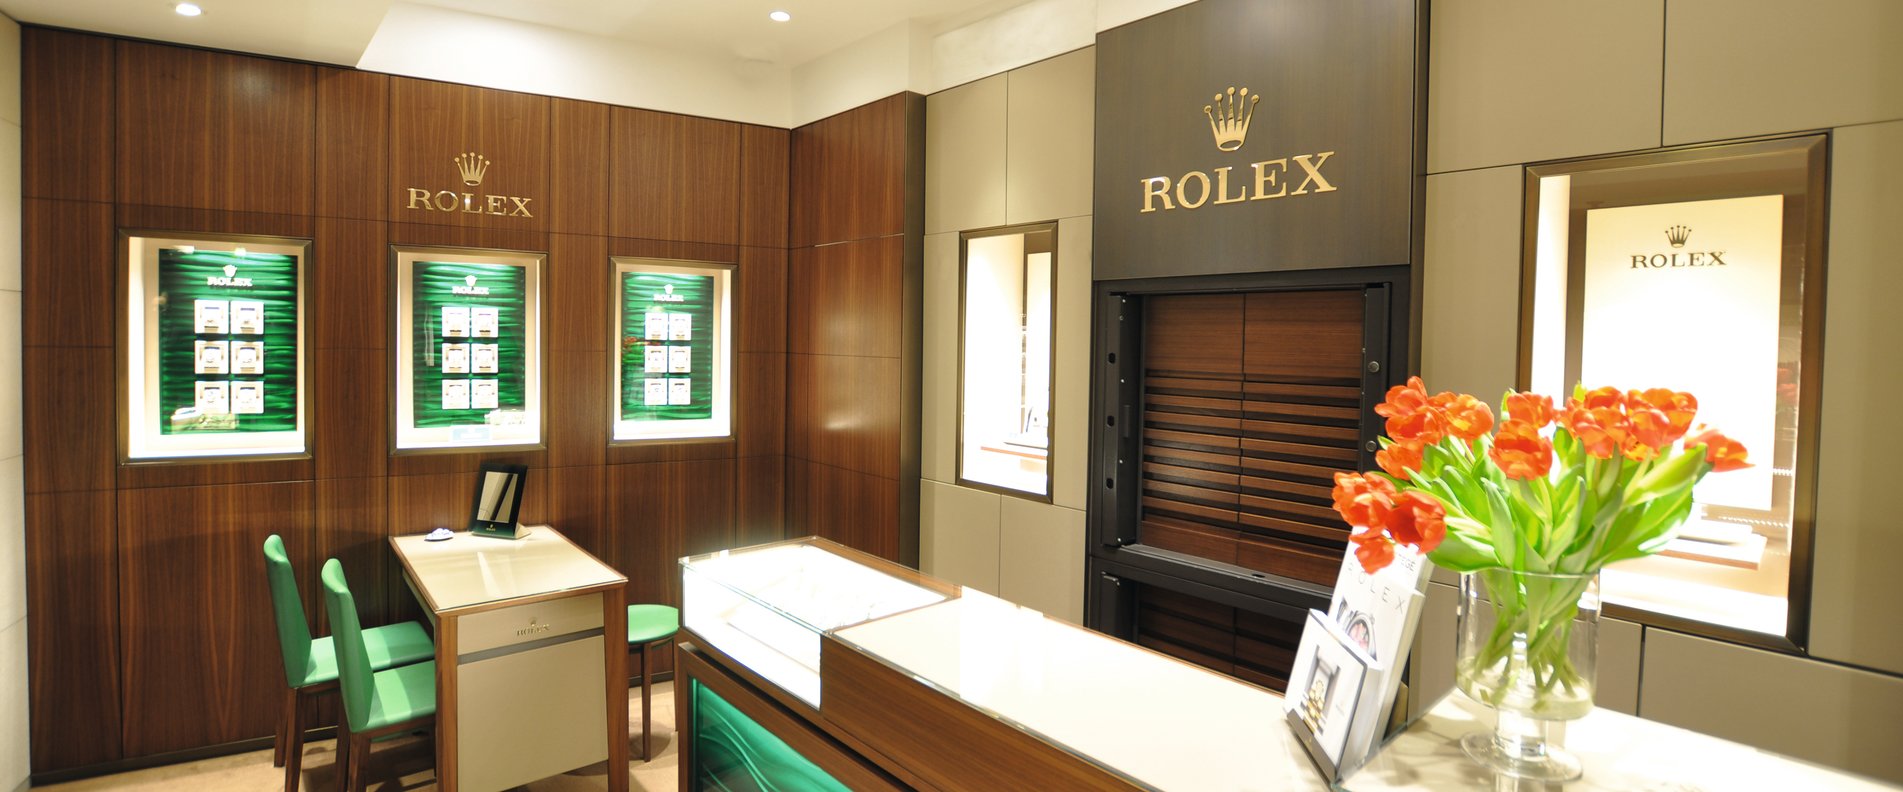 Rolex Boutique, Dallinger | © Gebrüder Dallinger GmbH